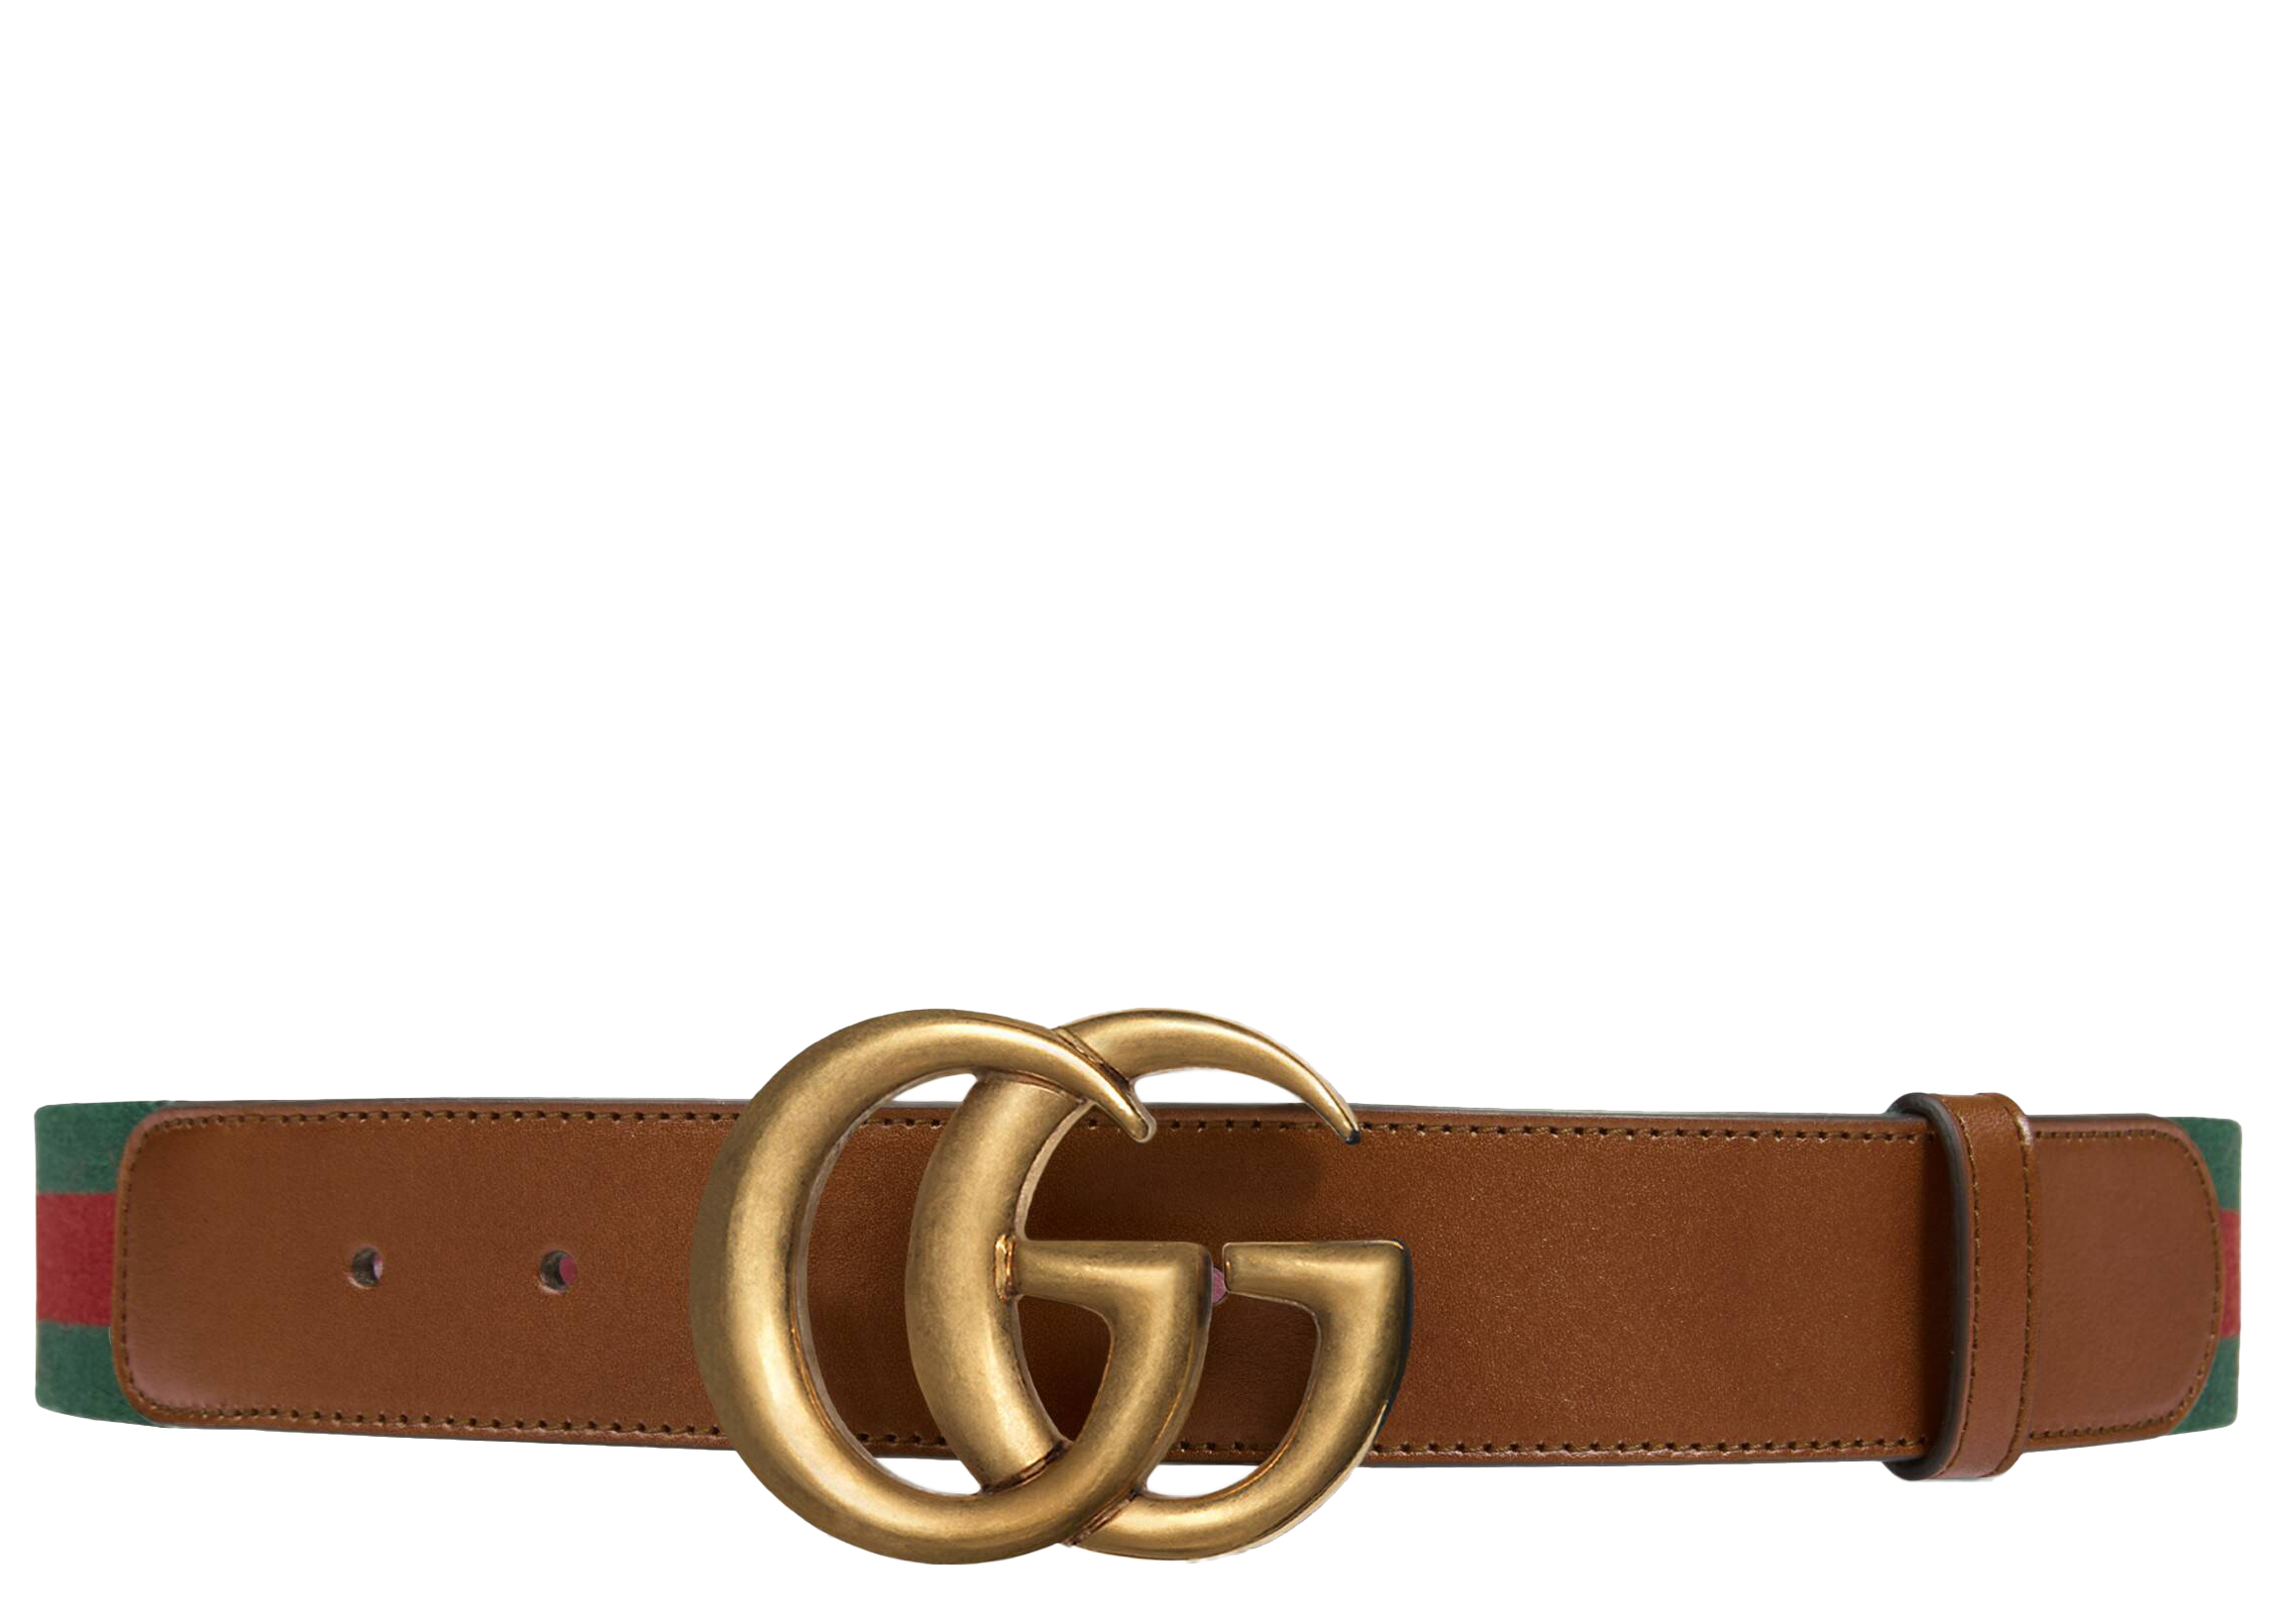 Double G buckle GG belt